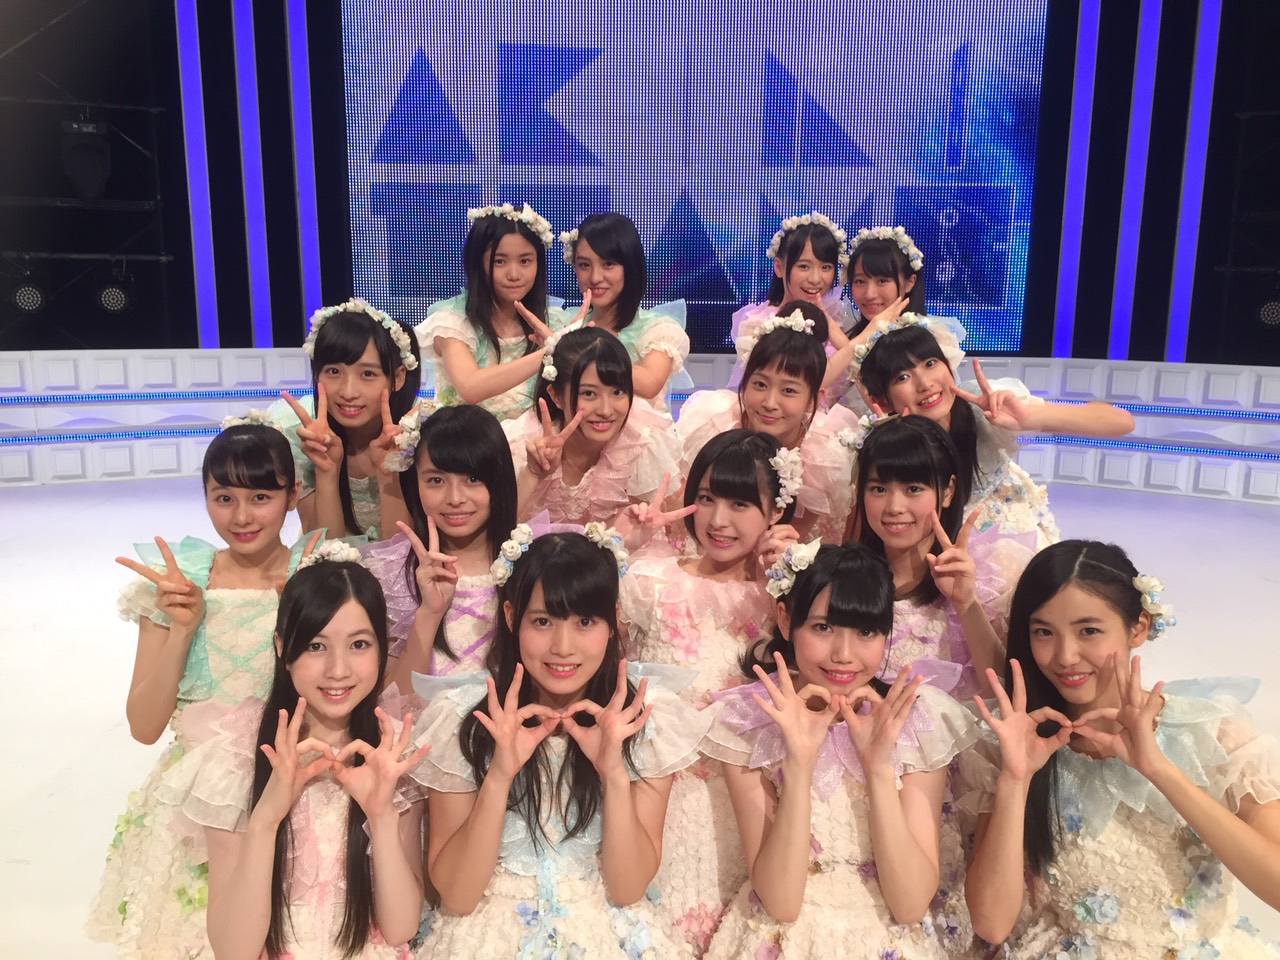 11月7日放送 Akb48 Show 出演 チーム8で ロマンス イラネ を披露 Nagisa S Diary 坂口渚沙 Akb48 Team8